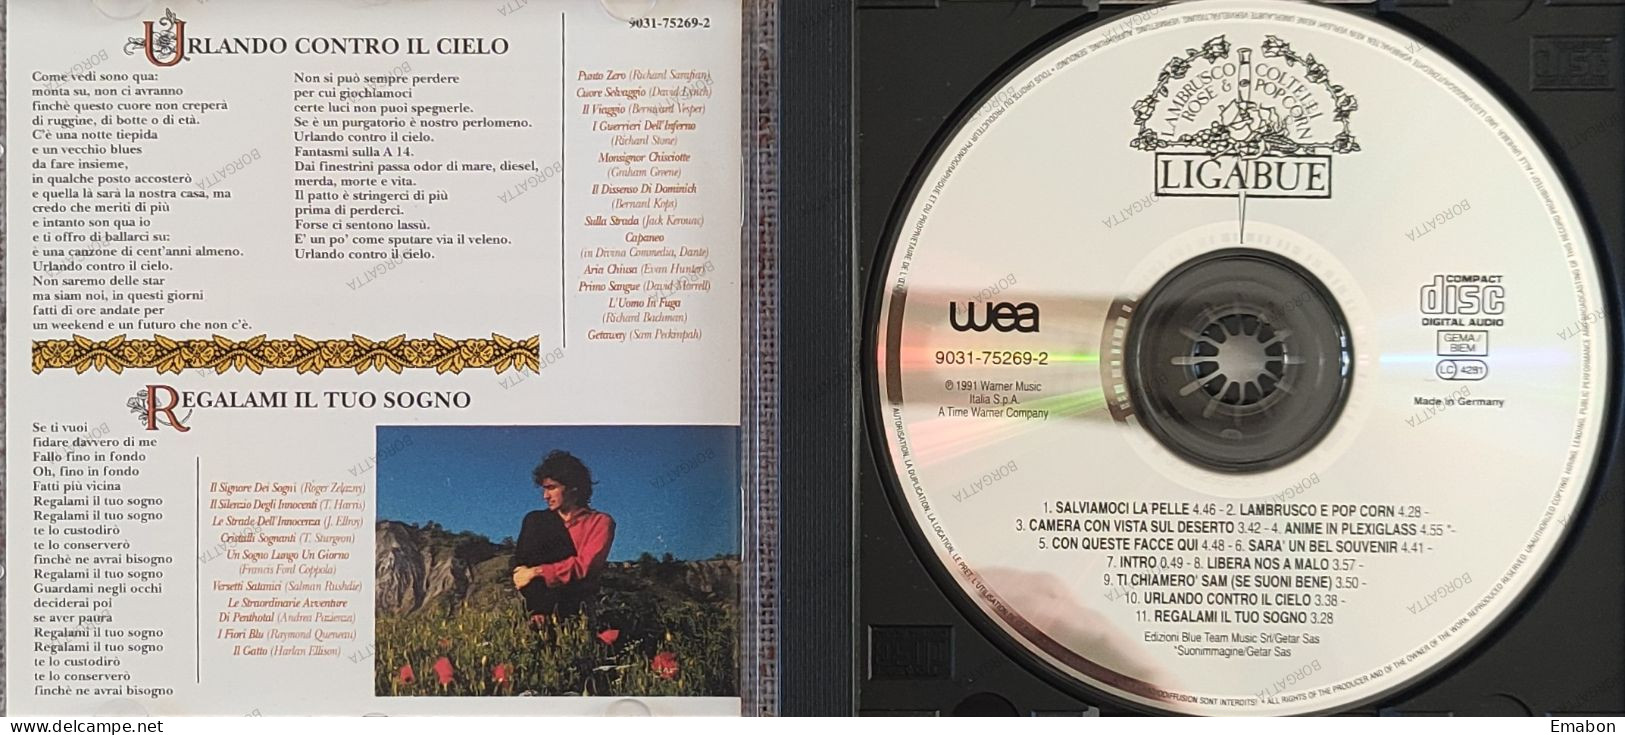 BORGATTA - ITALIANA  - Cd LIGABUE -  LAMBRUSCO, COLTELLI, ROSE & POP CORN - WARNER MUSIC 1991 -  USATO In Buono Stato - Autres - Musique Italienne